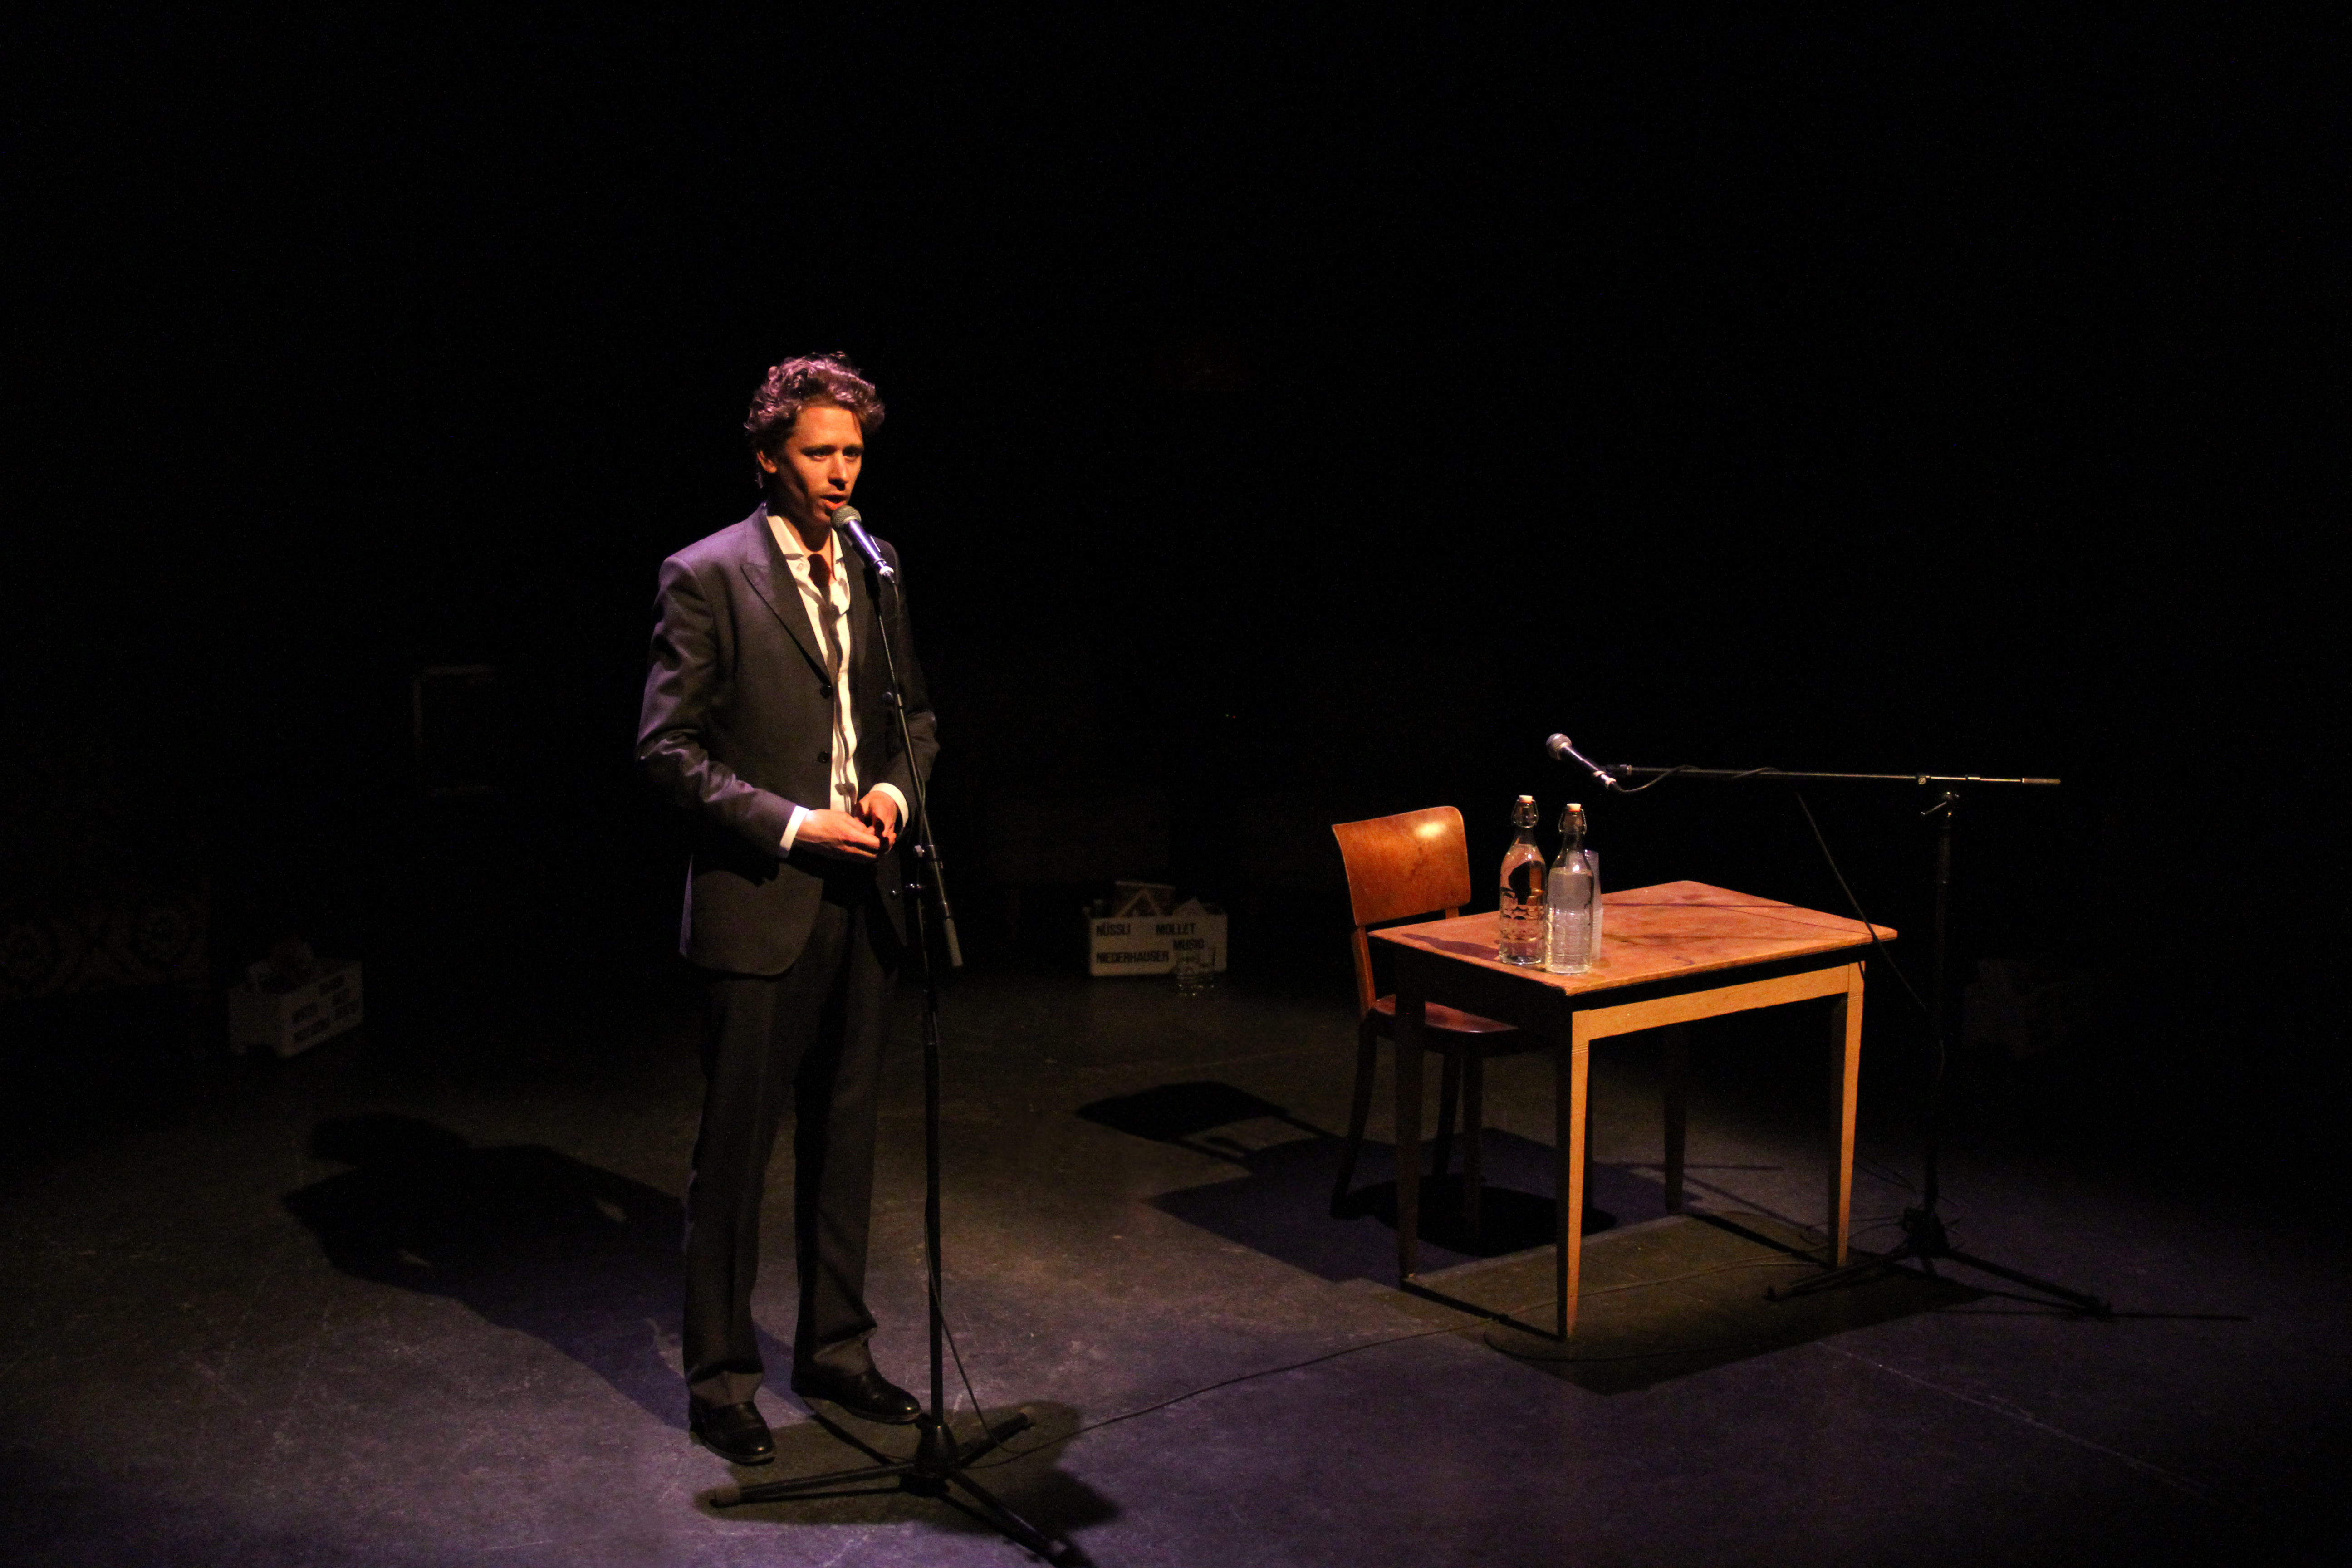 Ein junger Mann in schwarzem Anzug und weissem Hemd steht auf einer Bühne, ein Standmikrofon vor sich. Auf dem Holztischchen rechts von ihm zwei Wasserflaschen, dahinter ein Holzstuhl. Ein Standmikrofon ist auf Sitzhöhe eingestellt. Dunkler Hintergrund.